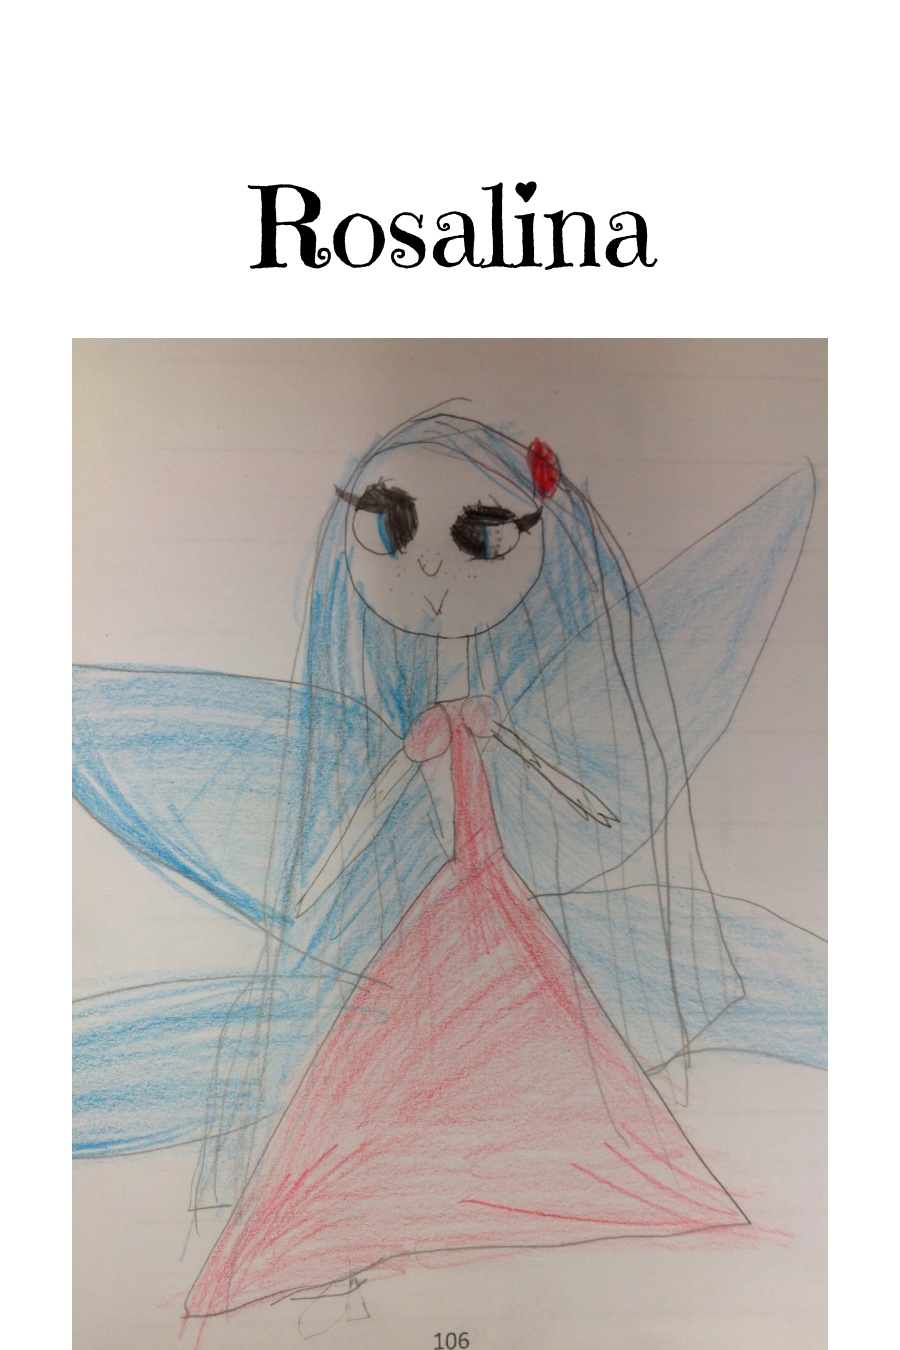 Rosalina by Vivian B